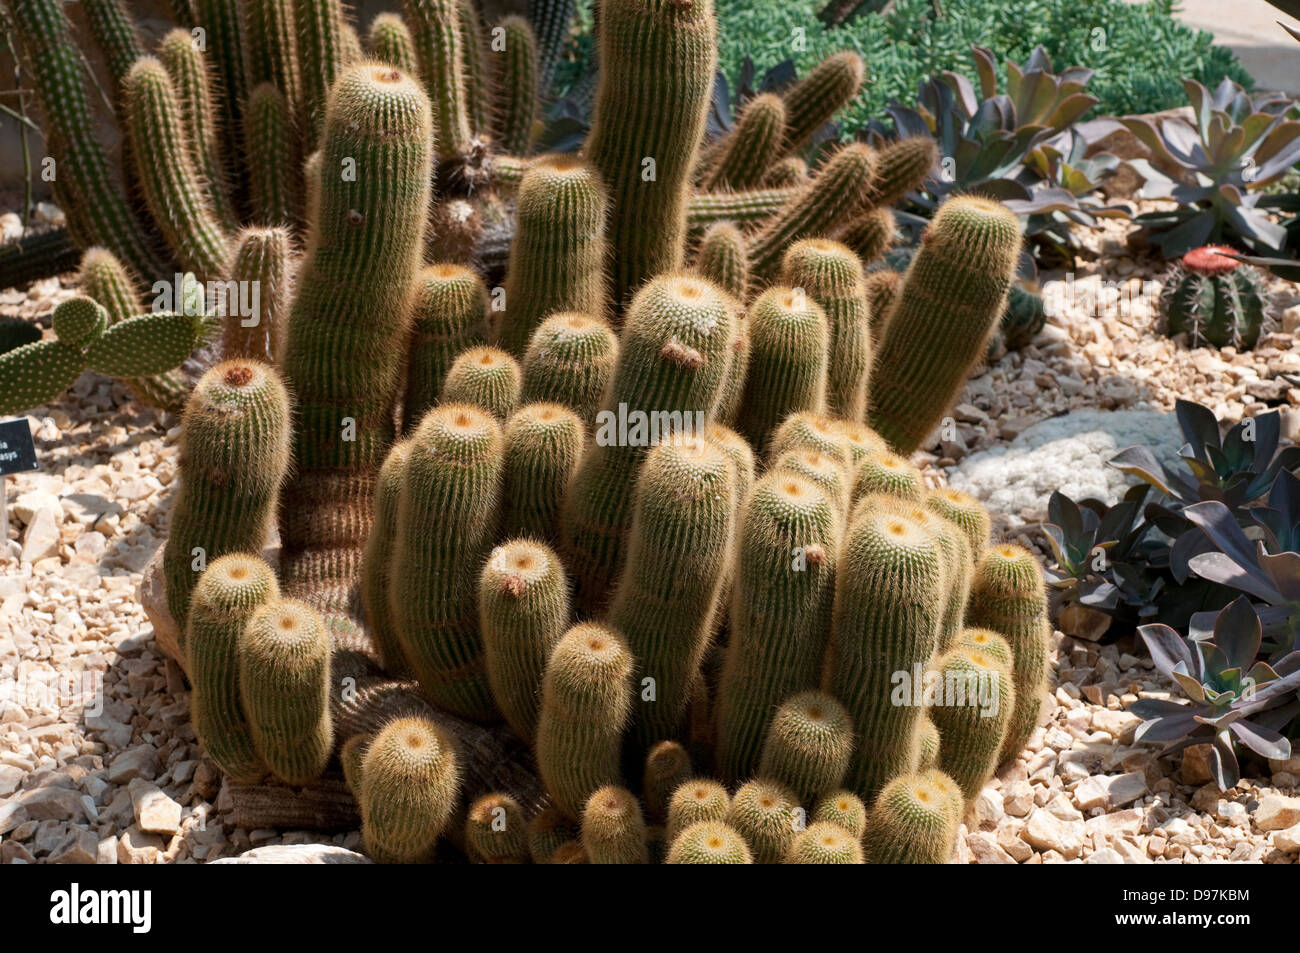 Parodia Leninghausii Kaktus Stockfoto